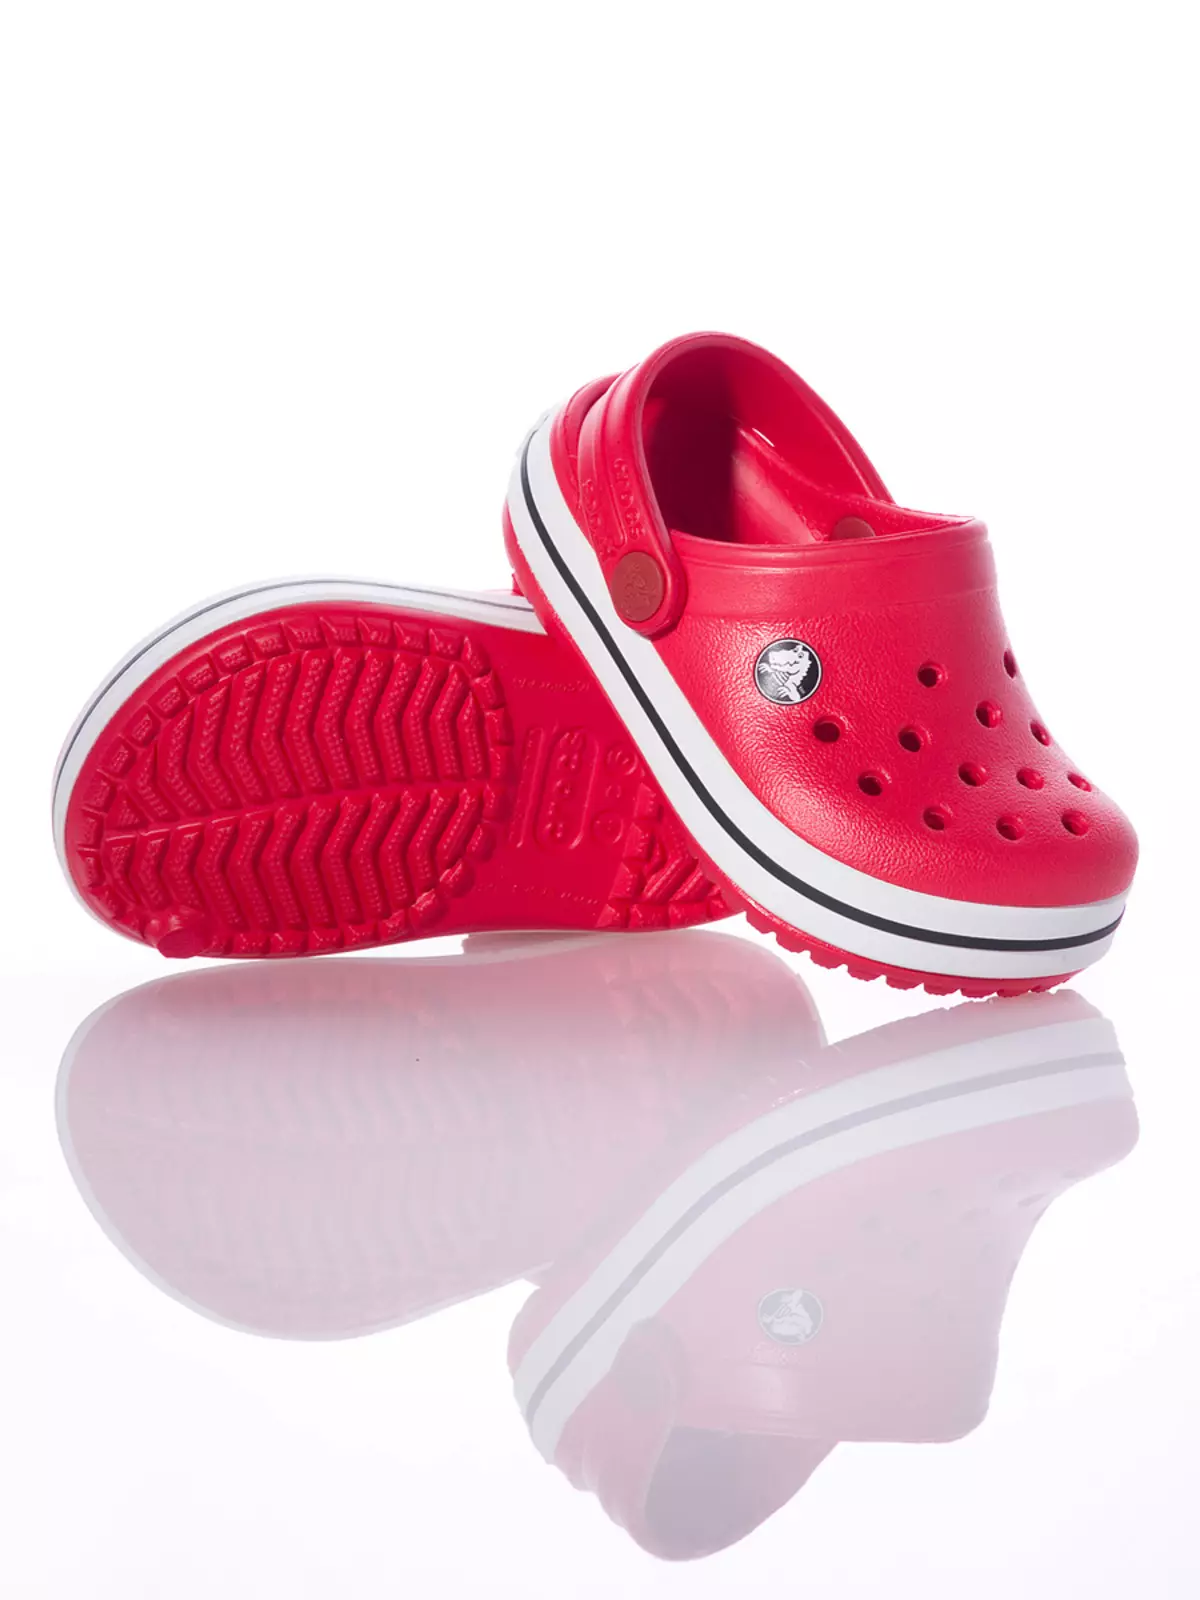 Crocs ზამთრის ფეხსაცმელი (32 ფოტო): Baby თბილი მოდელები ზამთრის, მფლობელი მიმოხილვა 2094_26